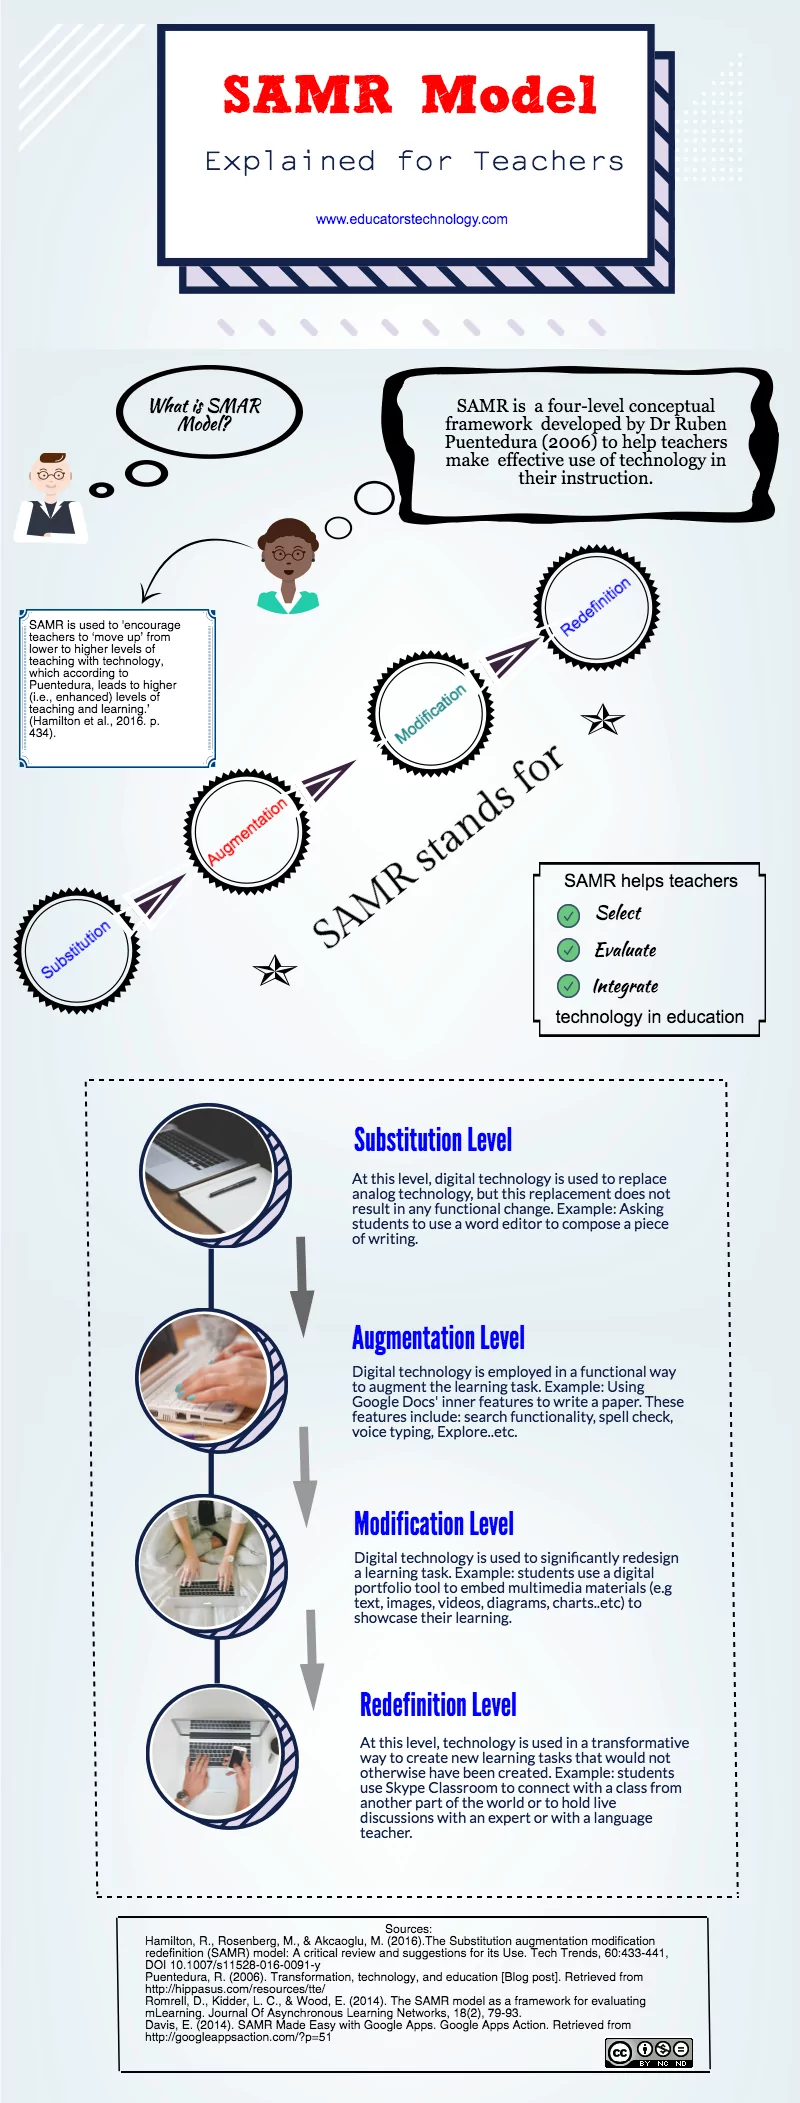 SAMR Model Visually Explained for Teachers